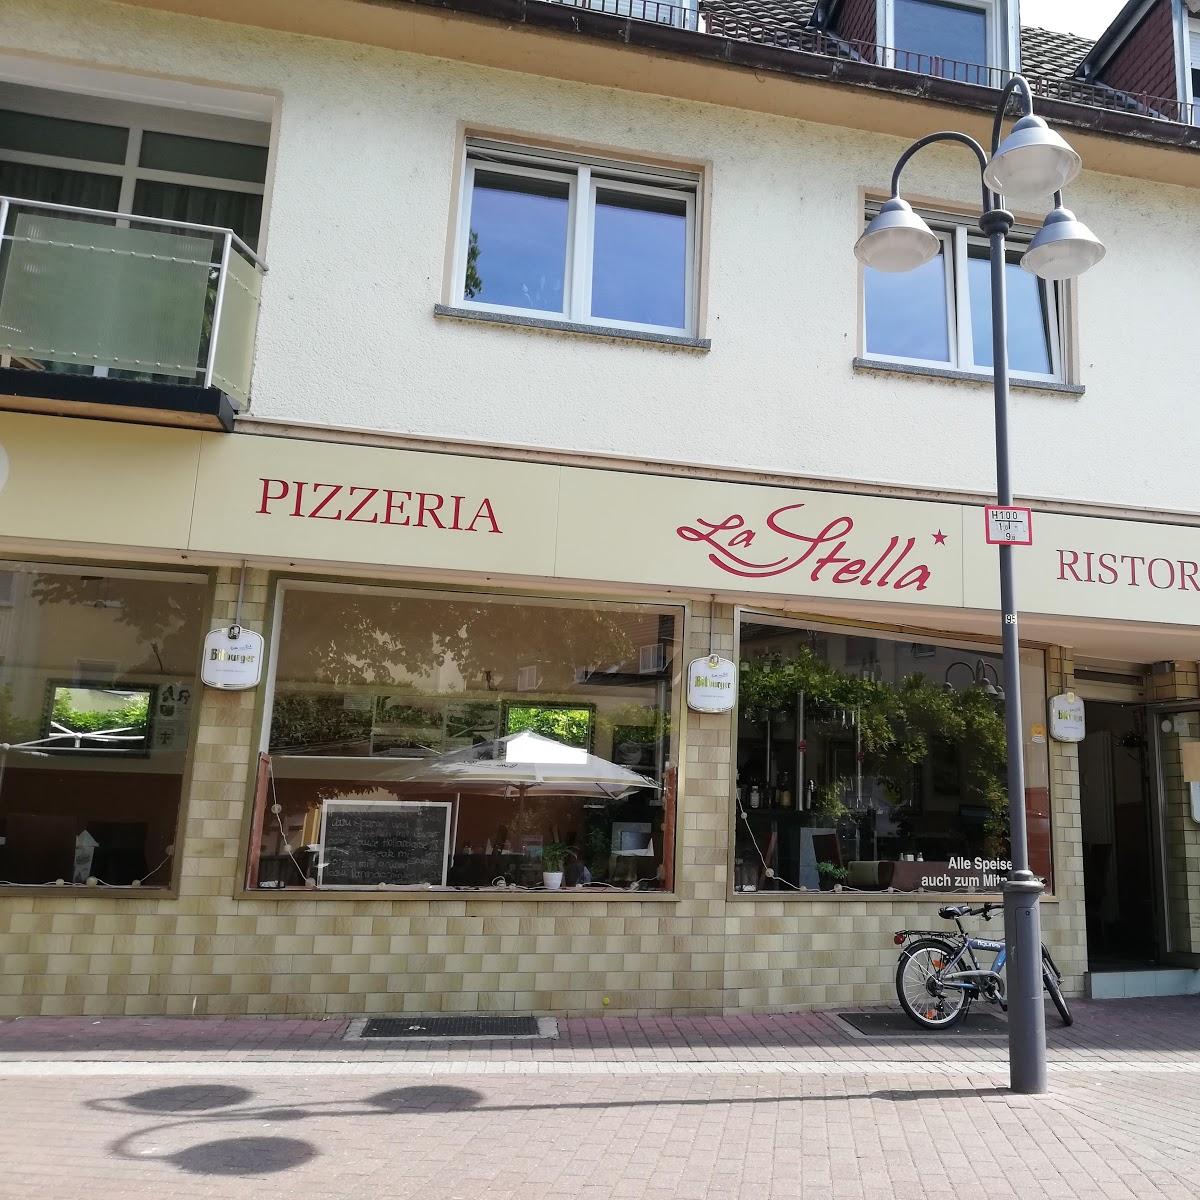 Restaurant "Pizzeria La Stella" in Mainz